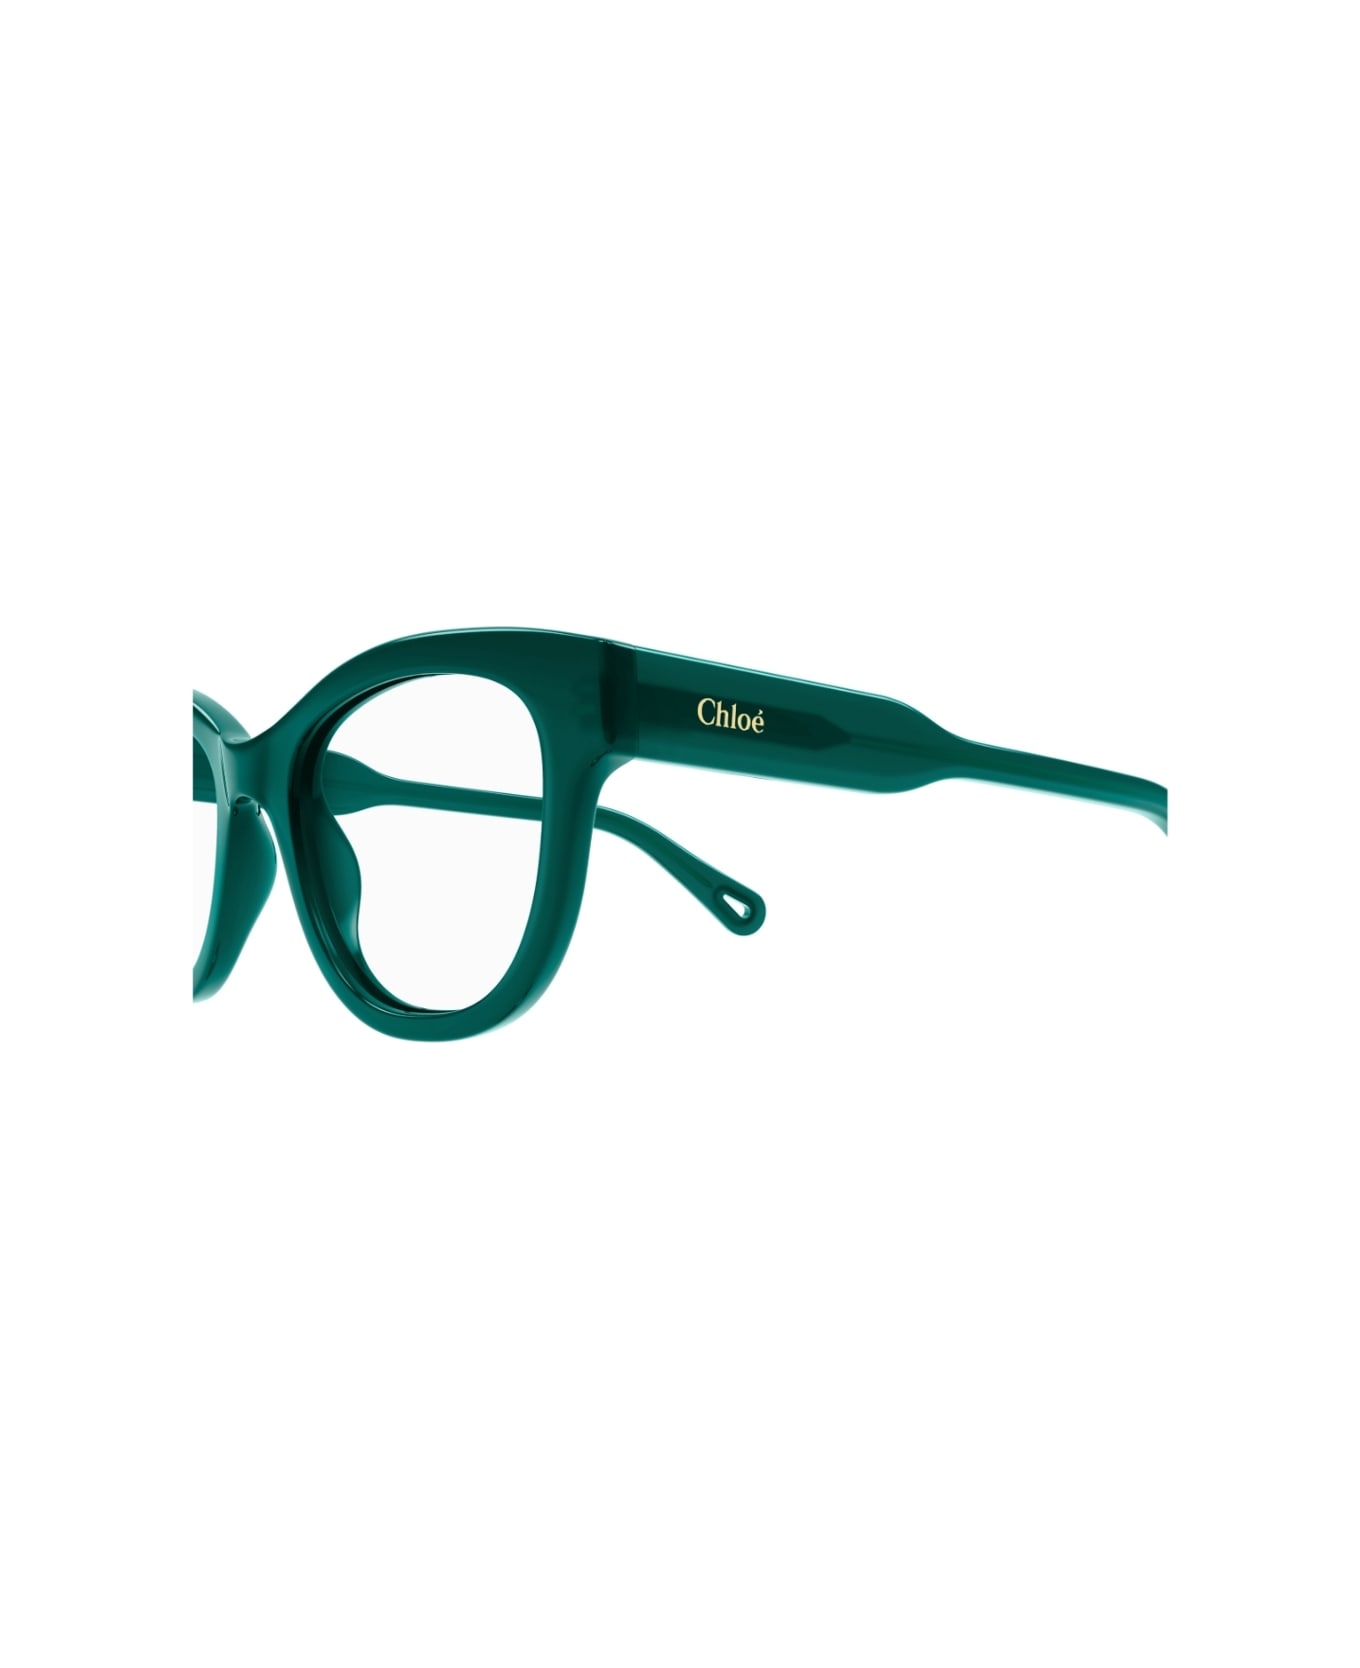 Chloé Eyewear CH0162o 008 Glasses アイウェア